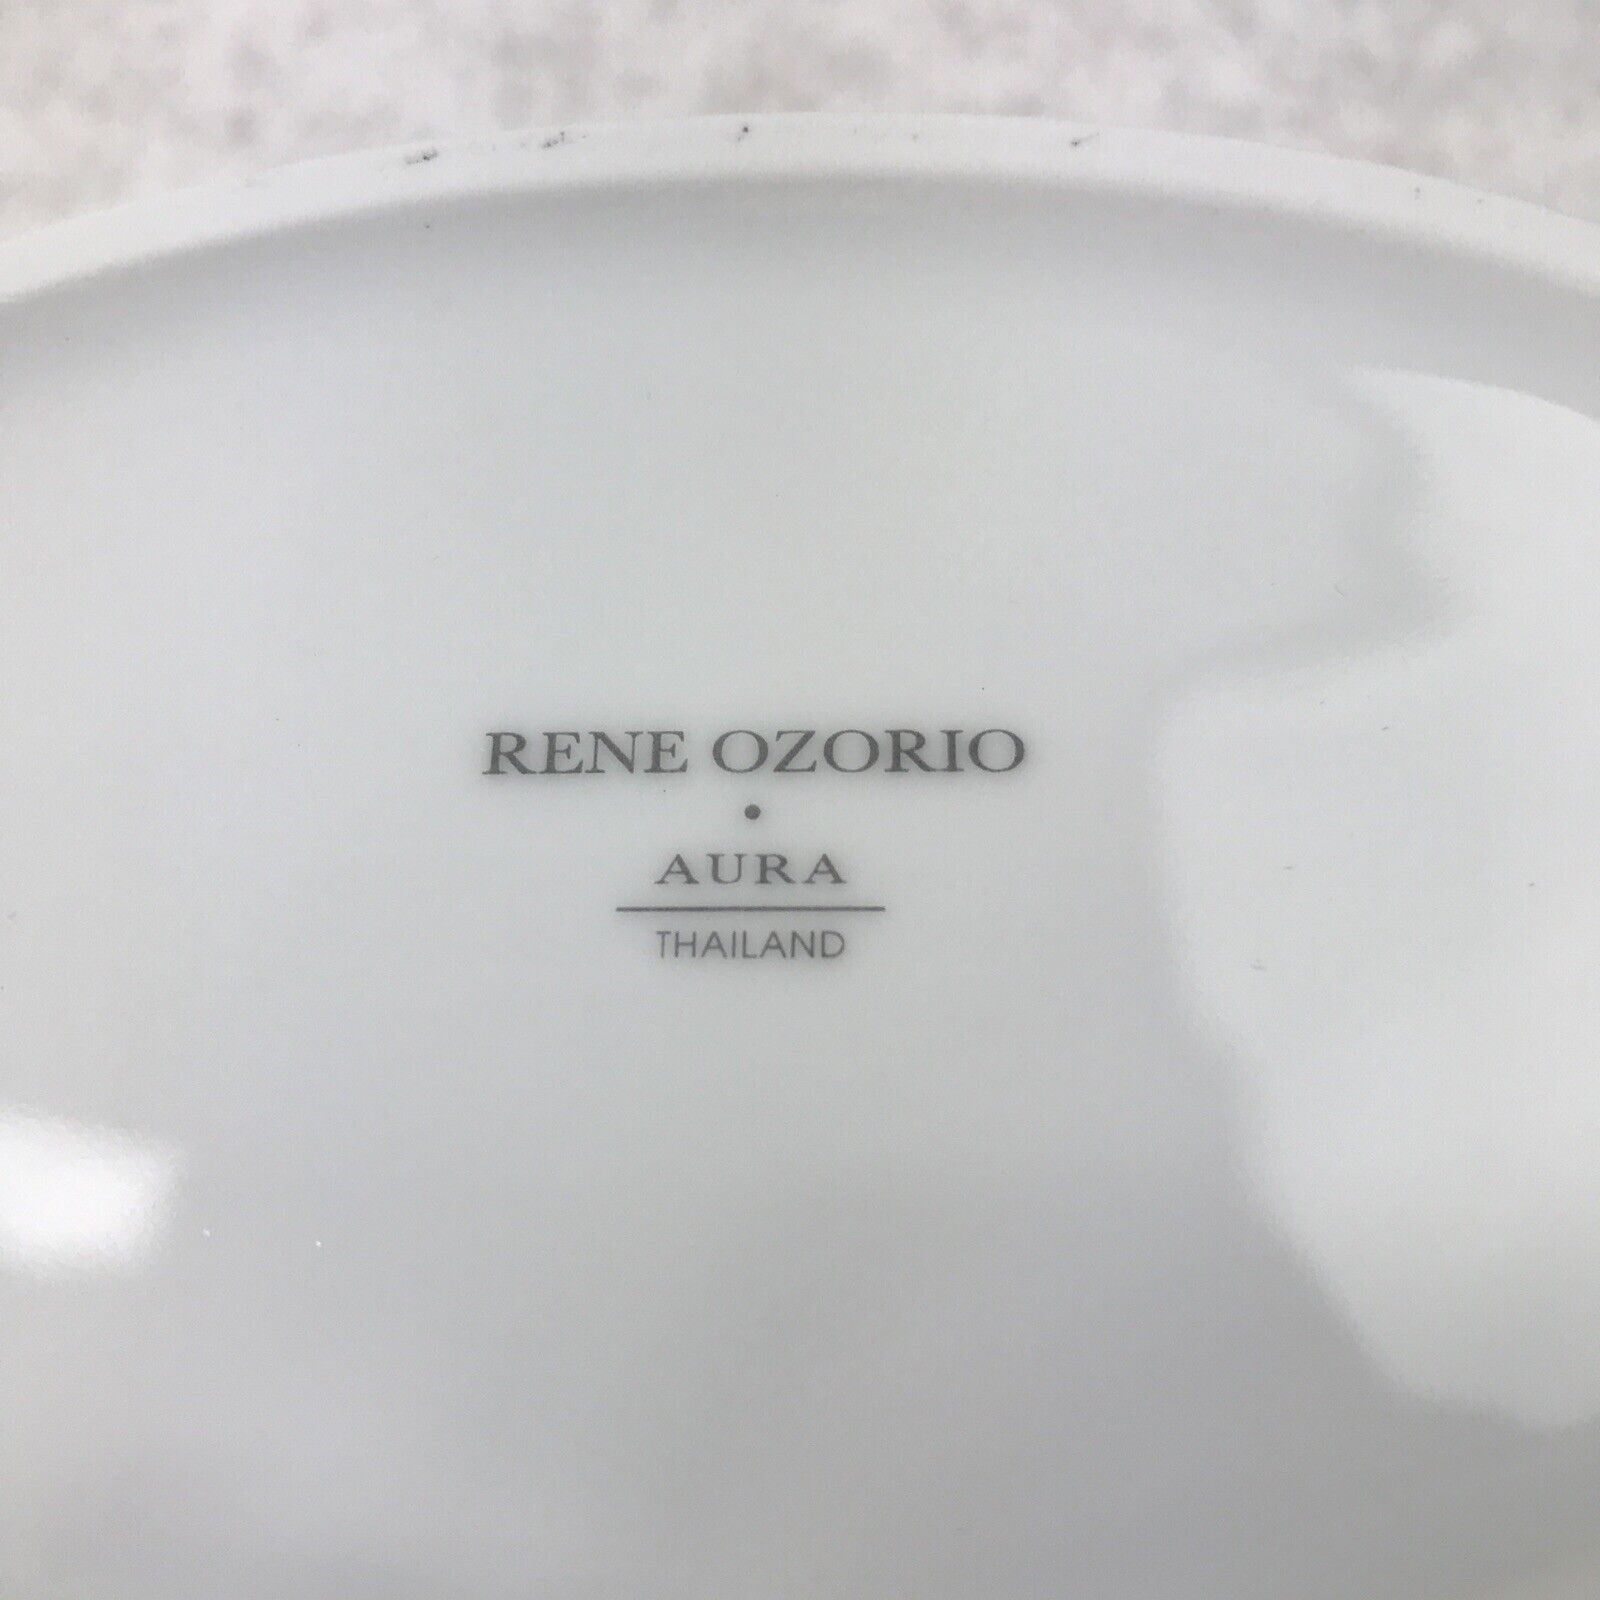 24 Piece set Steelite 6300P126 Rene Ozorio Aura 7-1/2 Oz White Oval Bowl